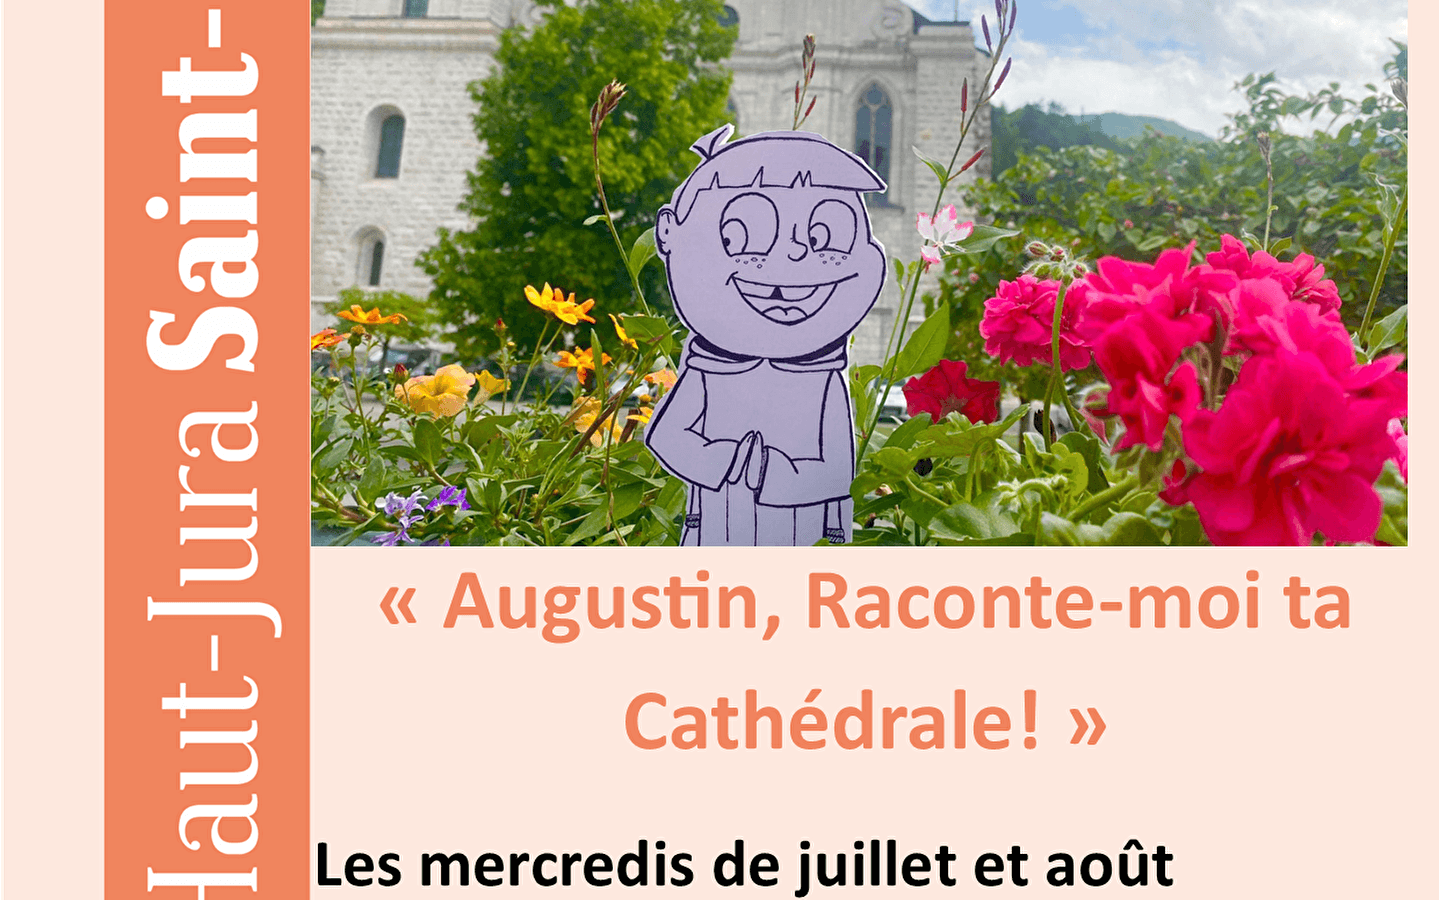 Office de Tourisme Haut-Jura Saint-Claude - visites guidées : Augustin raconte moi ta cathédrale